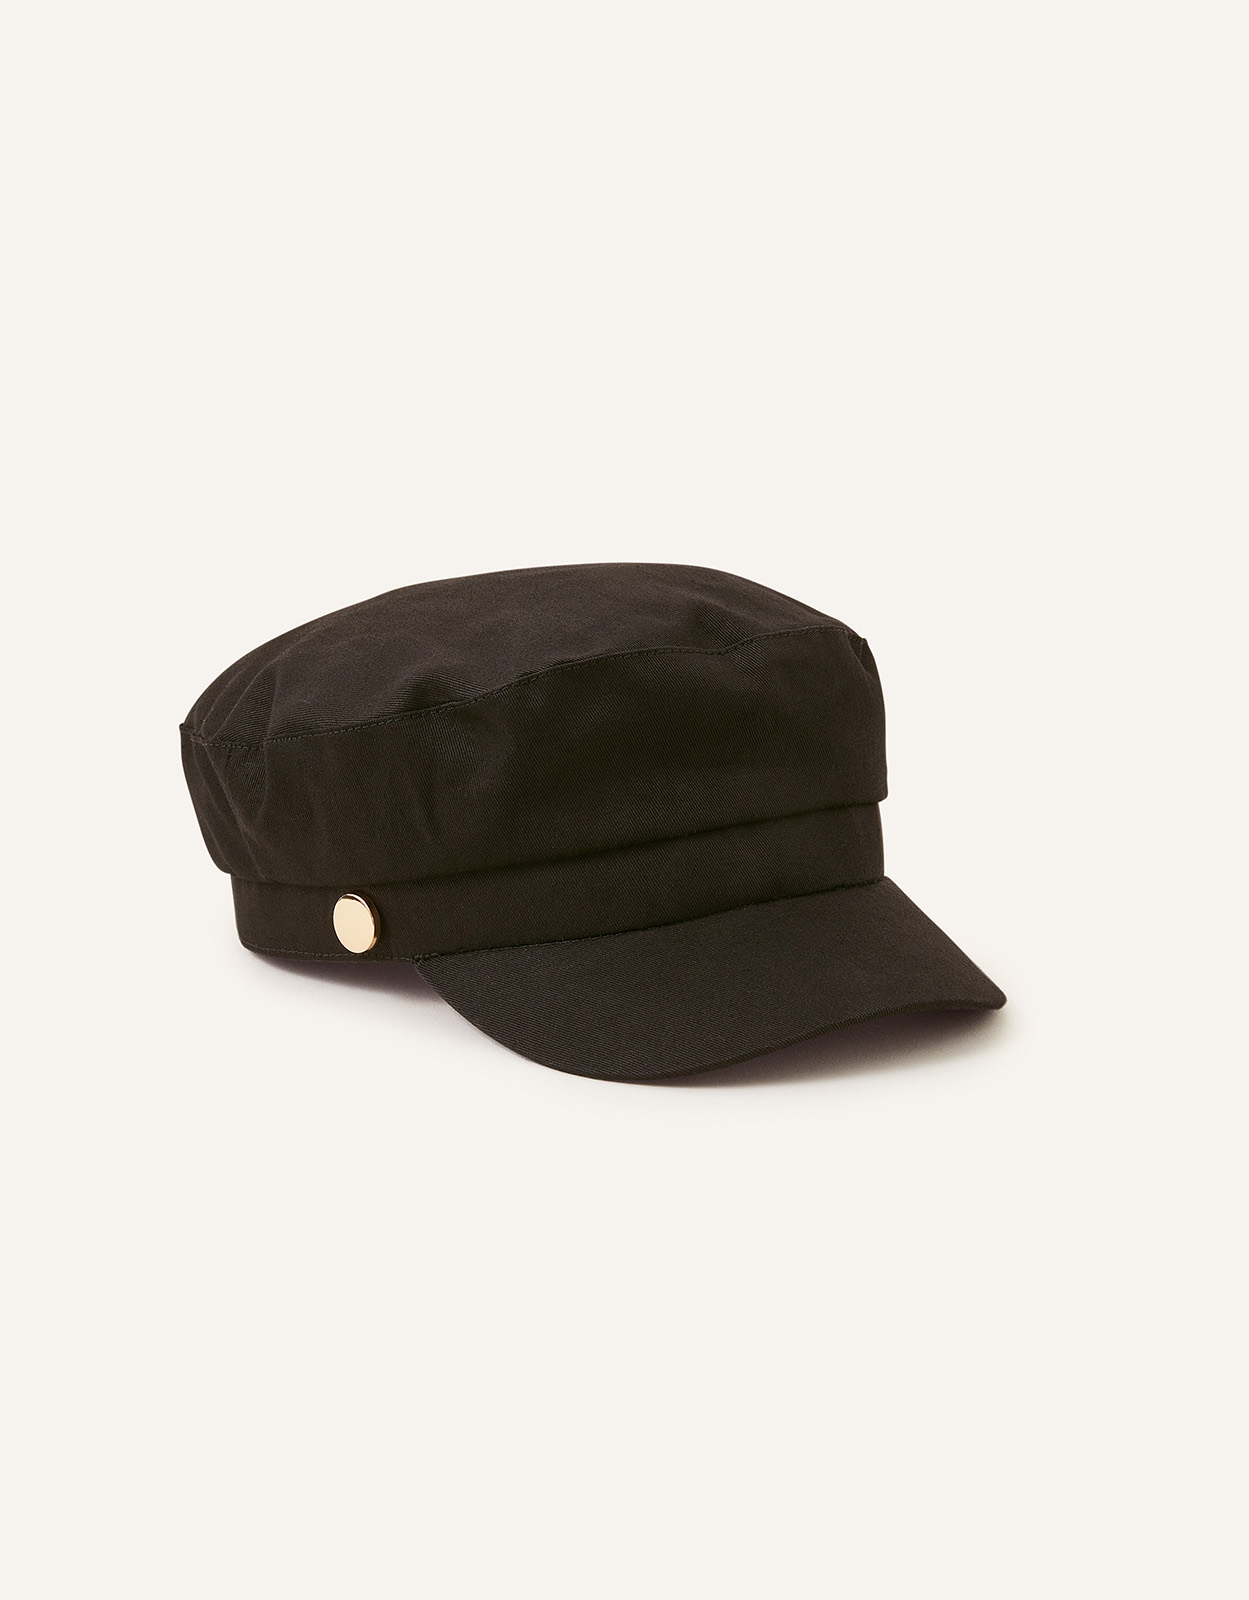 Accessorize Men's Canvas Baker Boy Hat, Size: 57cm